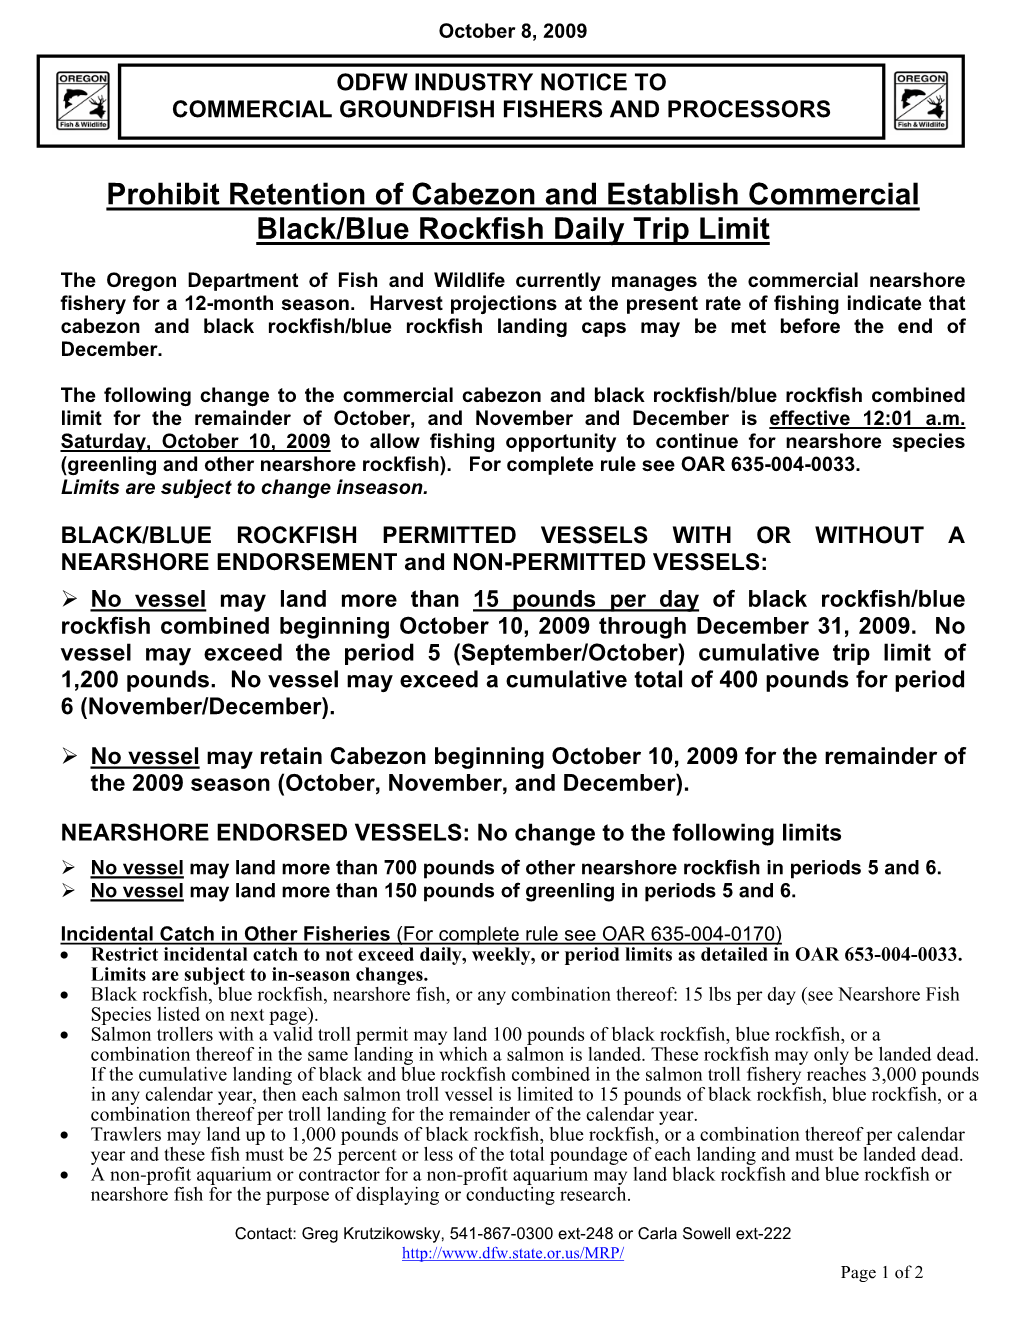 Prohibit Retention of Cabezon and Establish Commercial Black/Blue Rockfish Daily Trip Limit